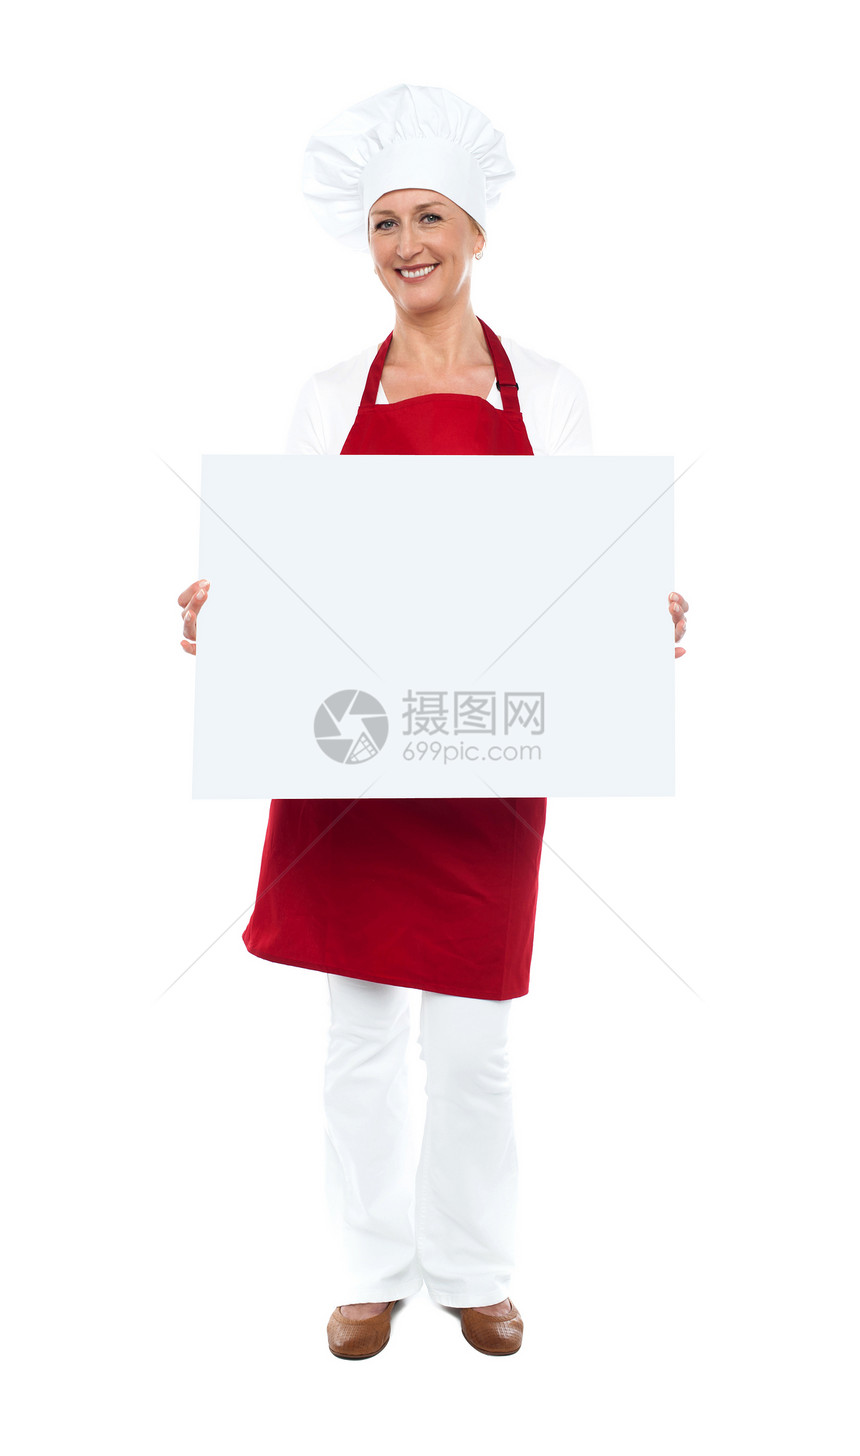 展示空白白广告板的女厨师女性餐厅冒充中年广告牌职业女士工作服务围裙图片